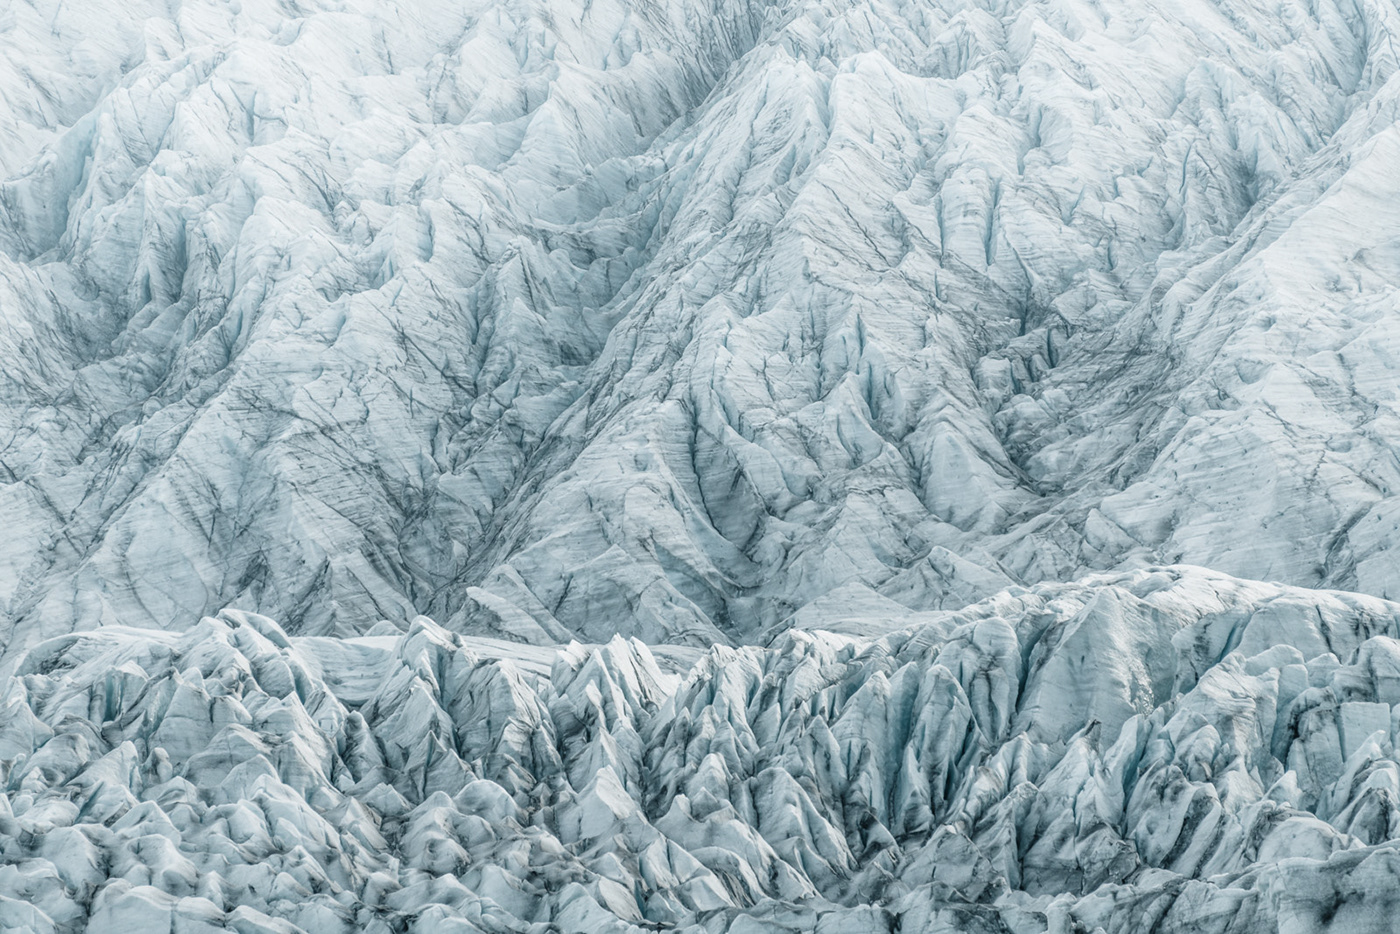 antarctica bright frozen glacier landscape photography light snow texture climate change global warming